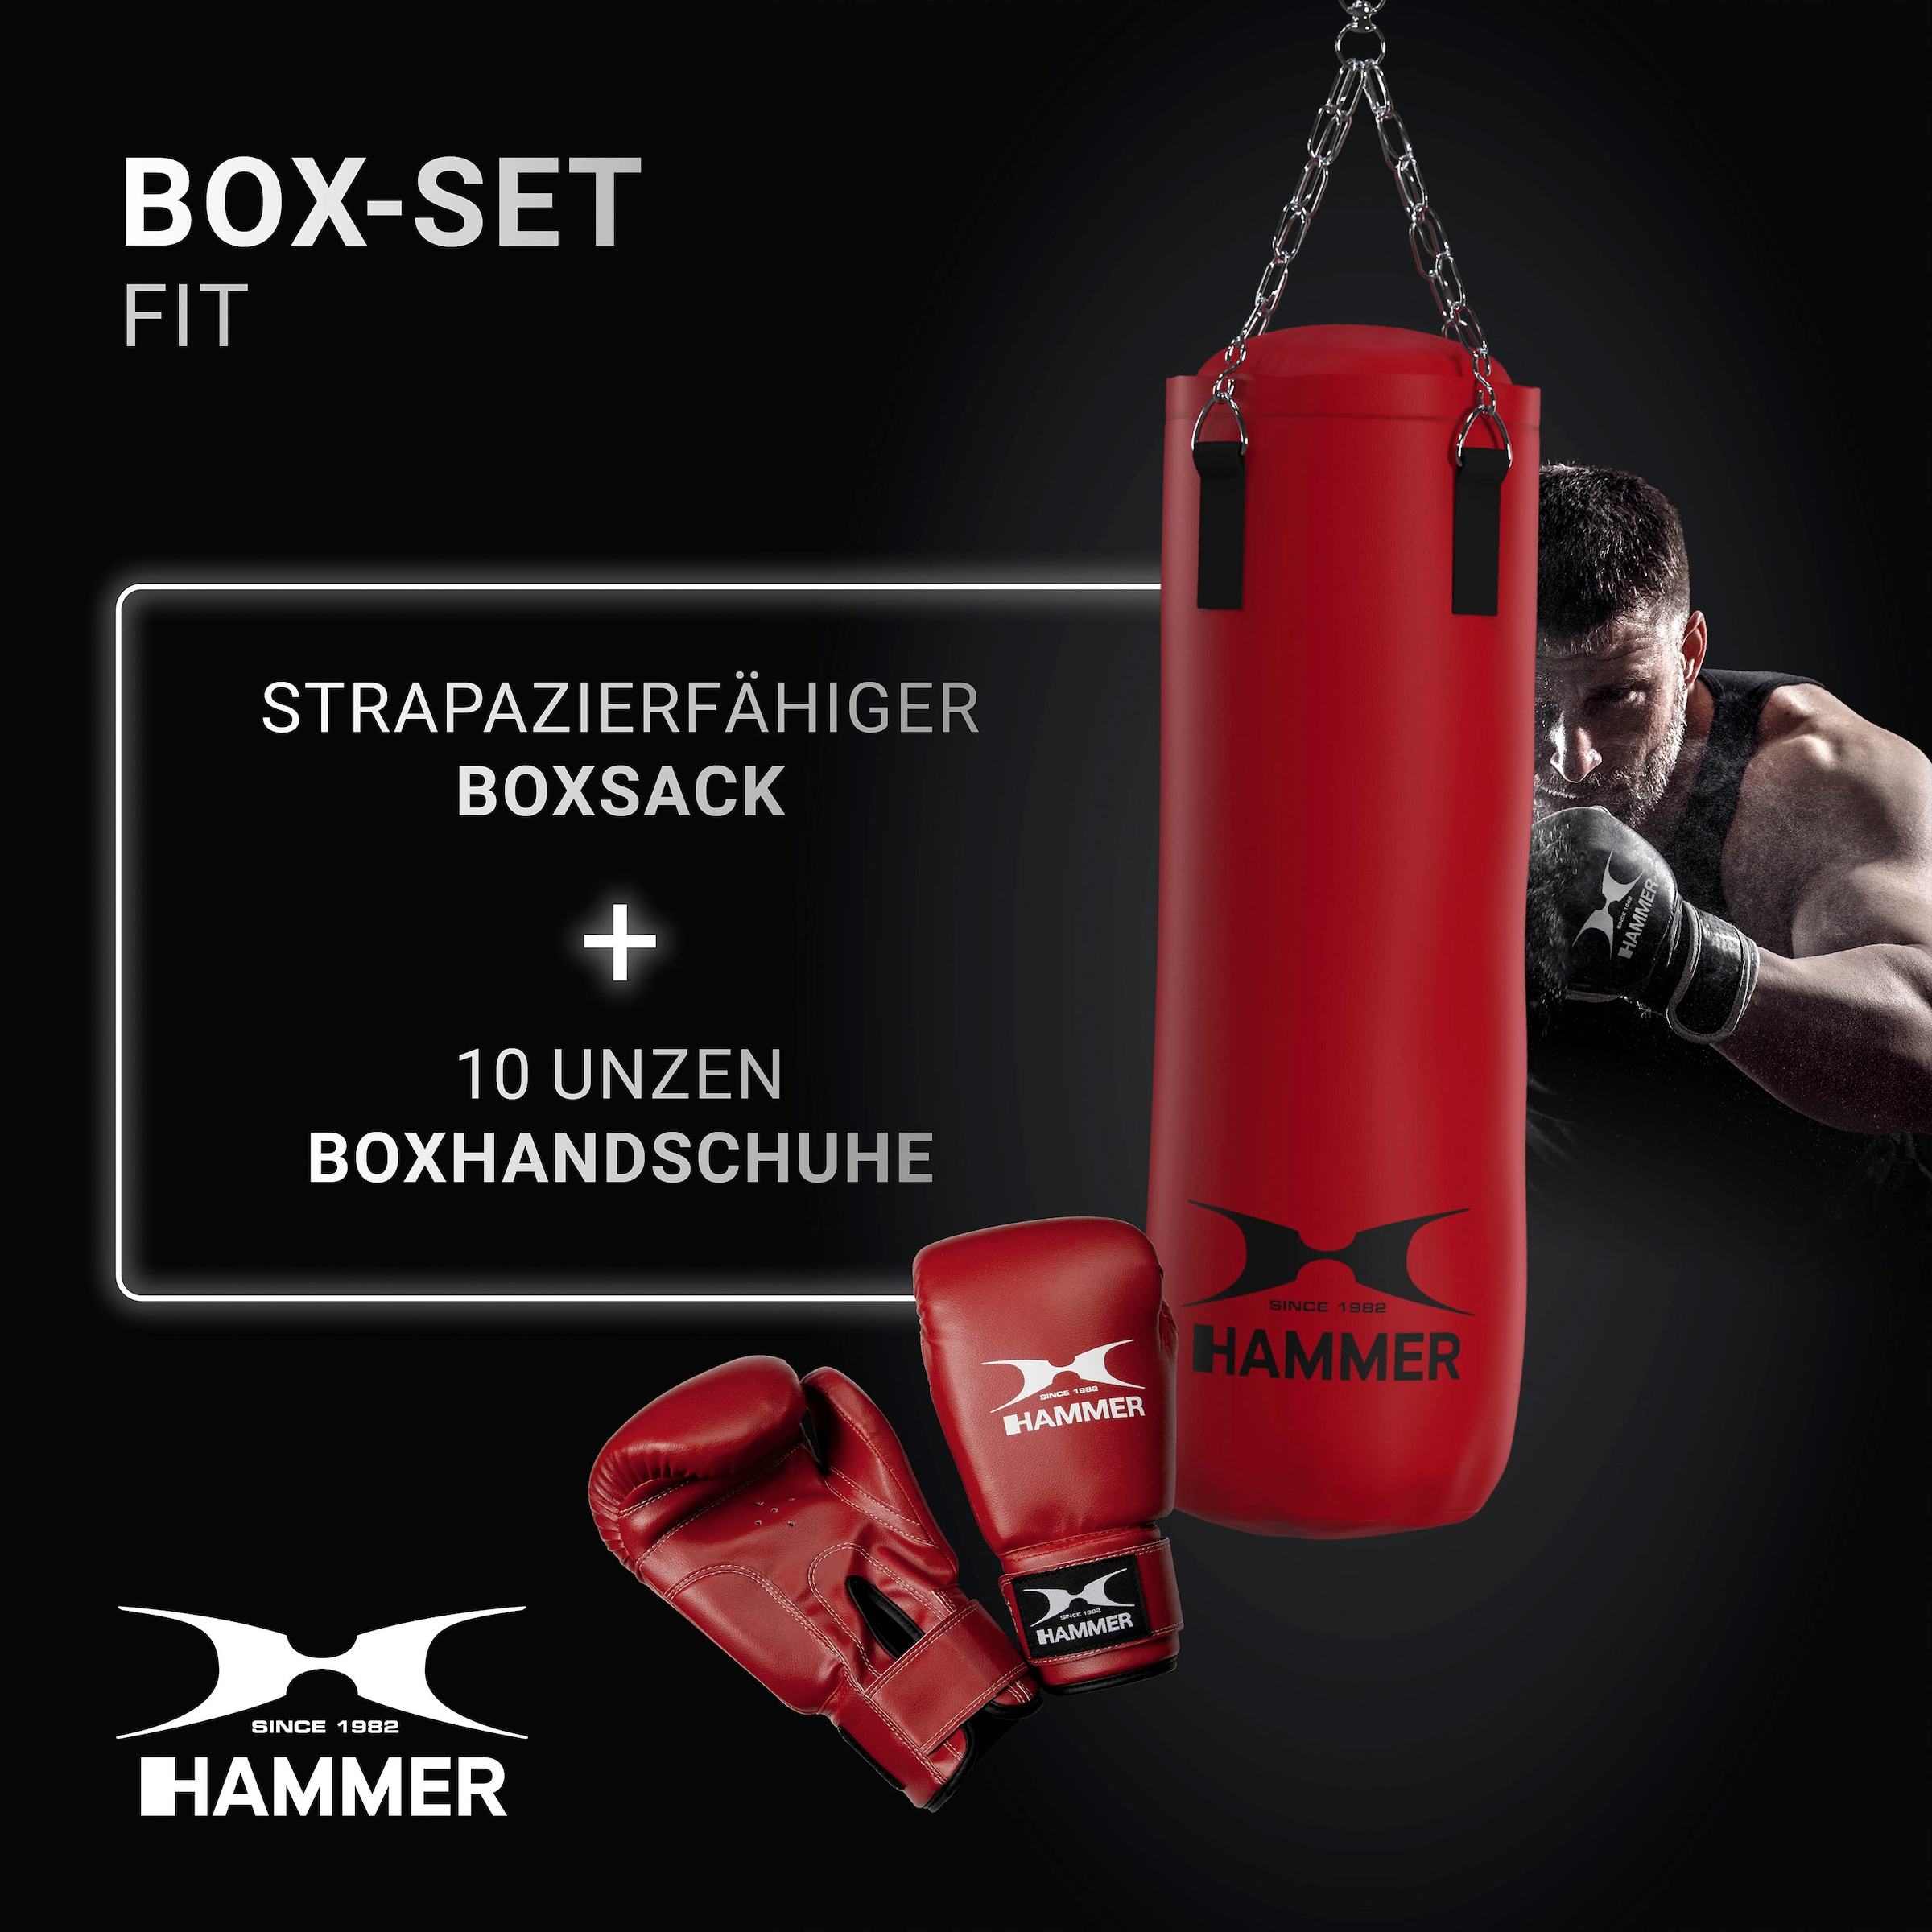 Trainings-DVD-mit Boxhandschuhen) bei Hammer mit Boxsack (Set, »Fit«,